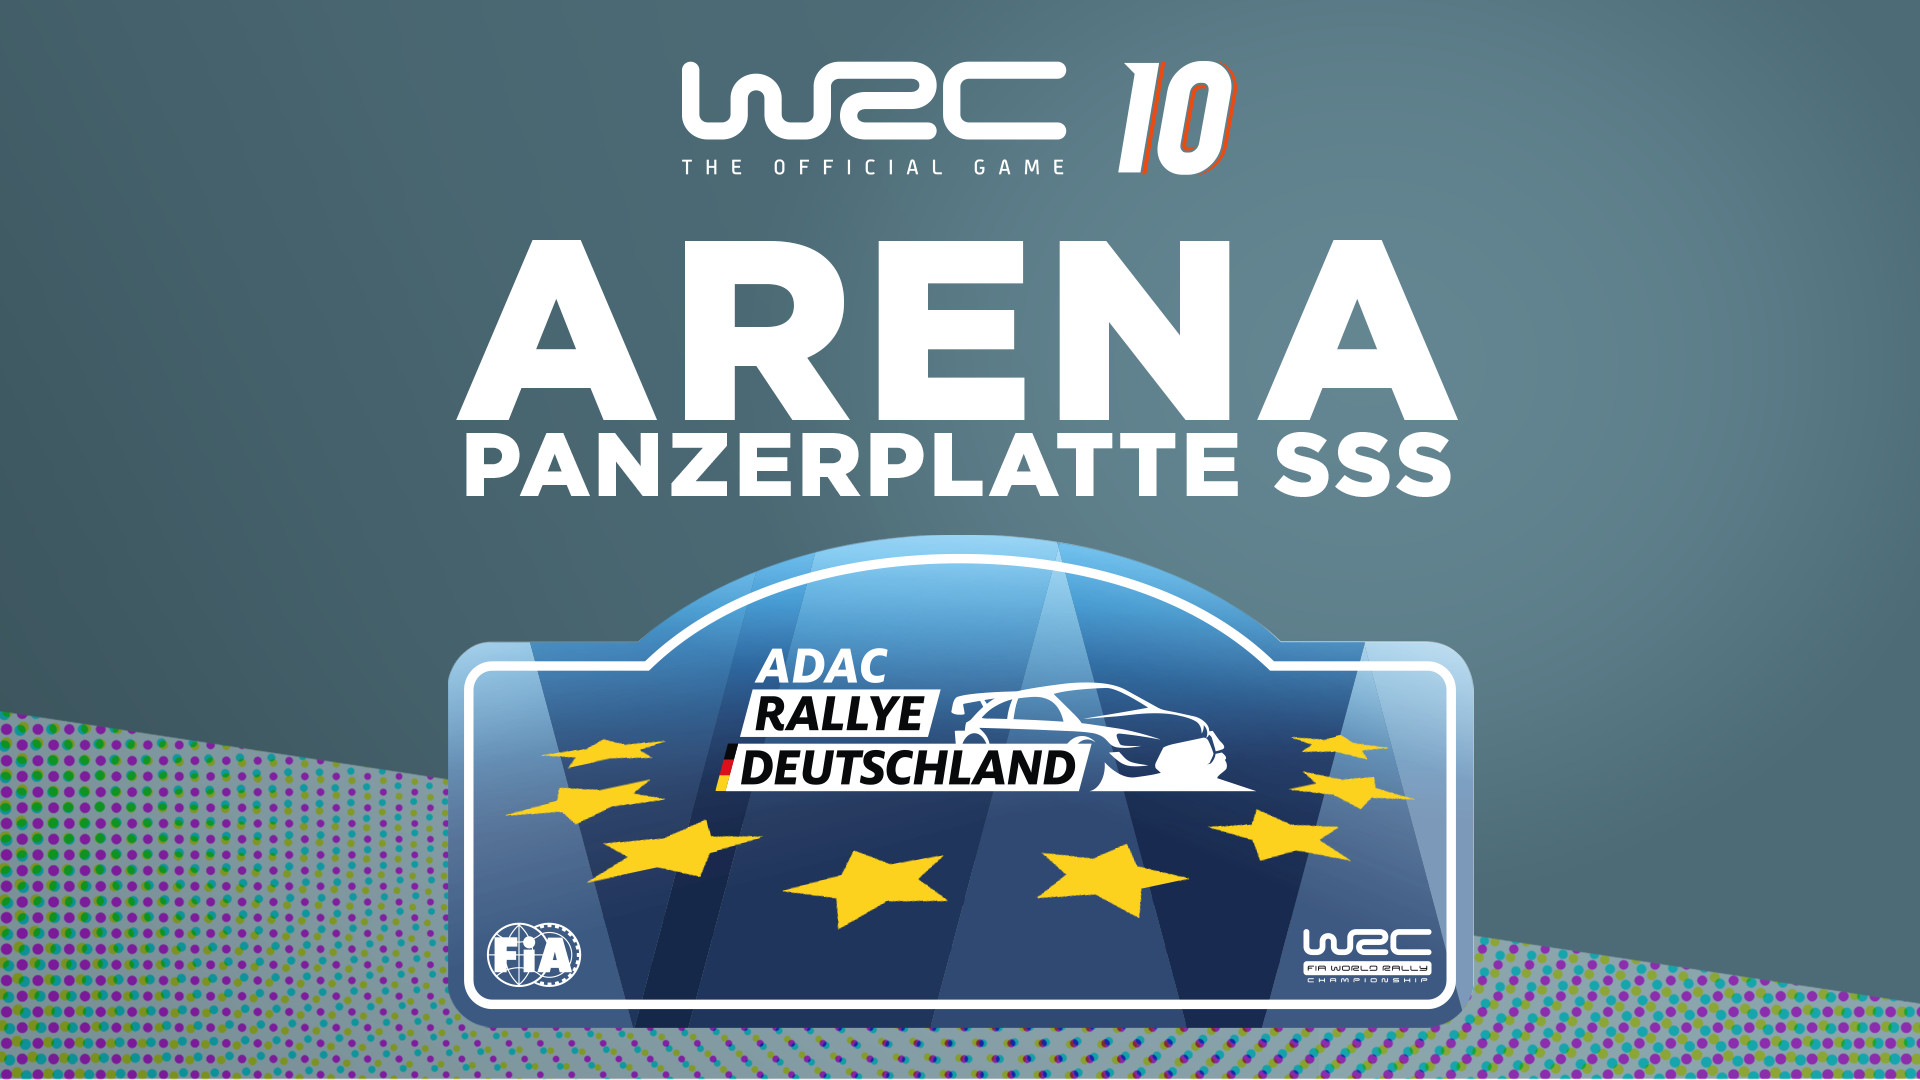 (4.51$) WRC 10 - Arena Panzerplatte SSS DLC Steam CD Key